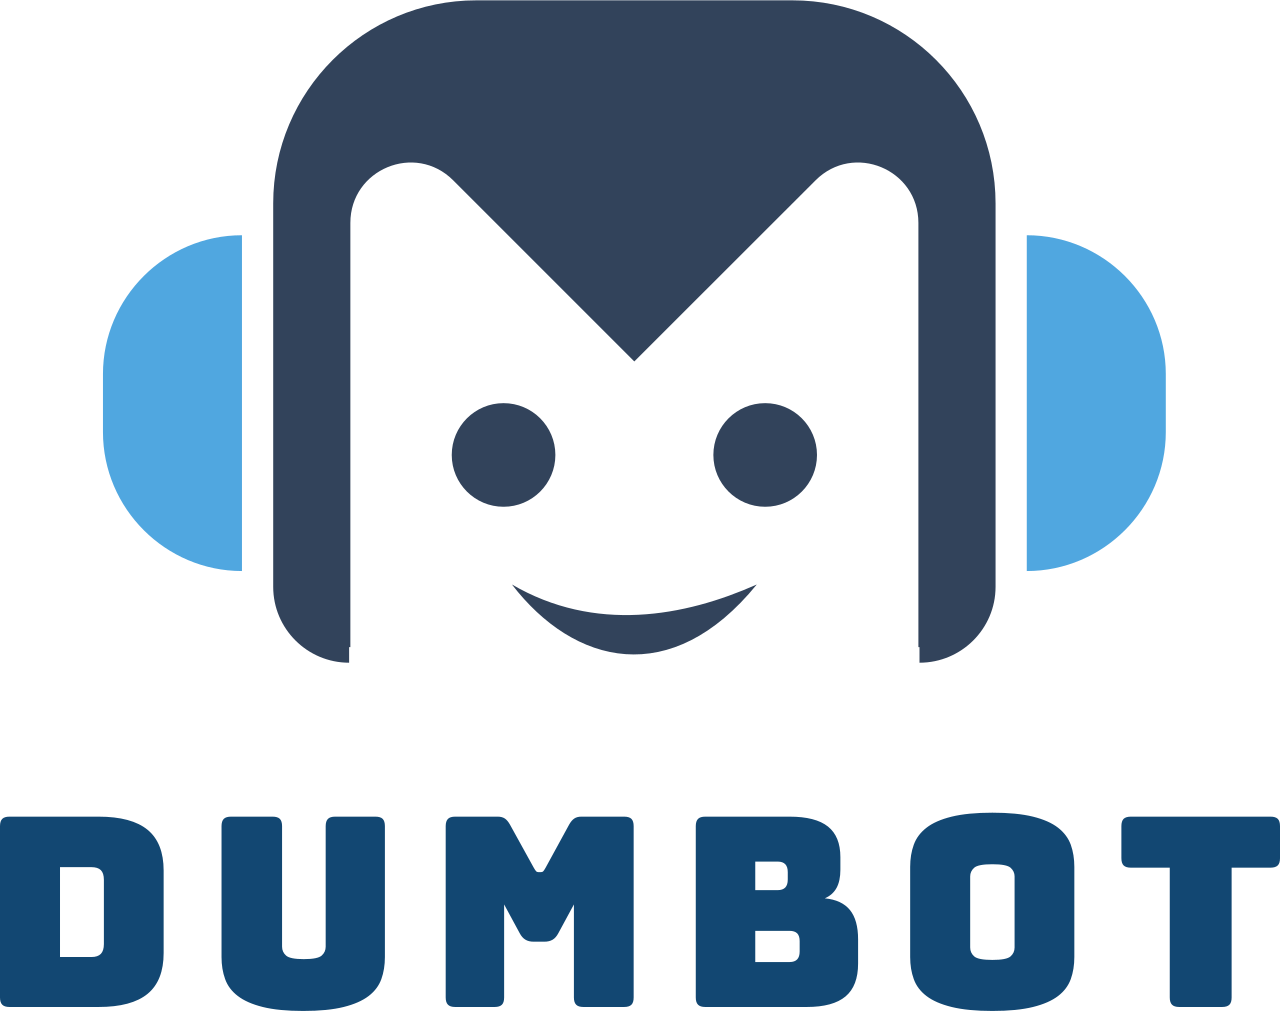 dumbot's logo